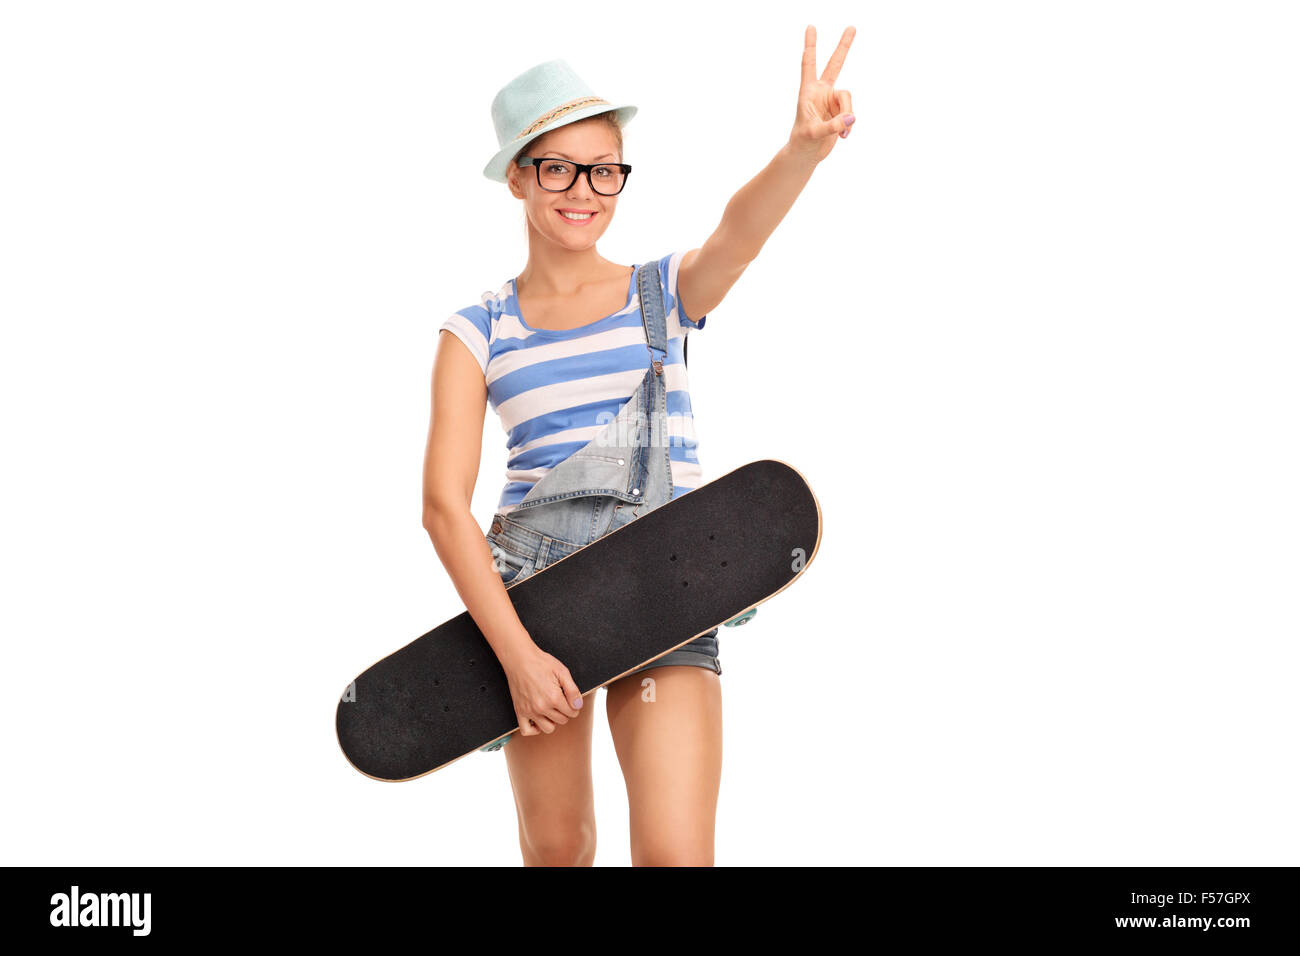 Studioaufnahme von jungen weiblichen Skater hält eine Skateboard und machen Frieden Handgeste isoliert auf weißem Hintergrund Stockfoto